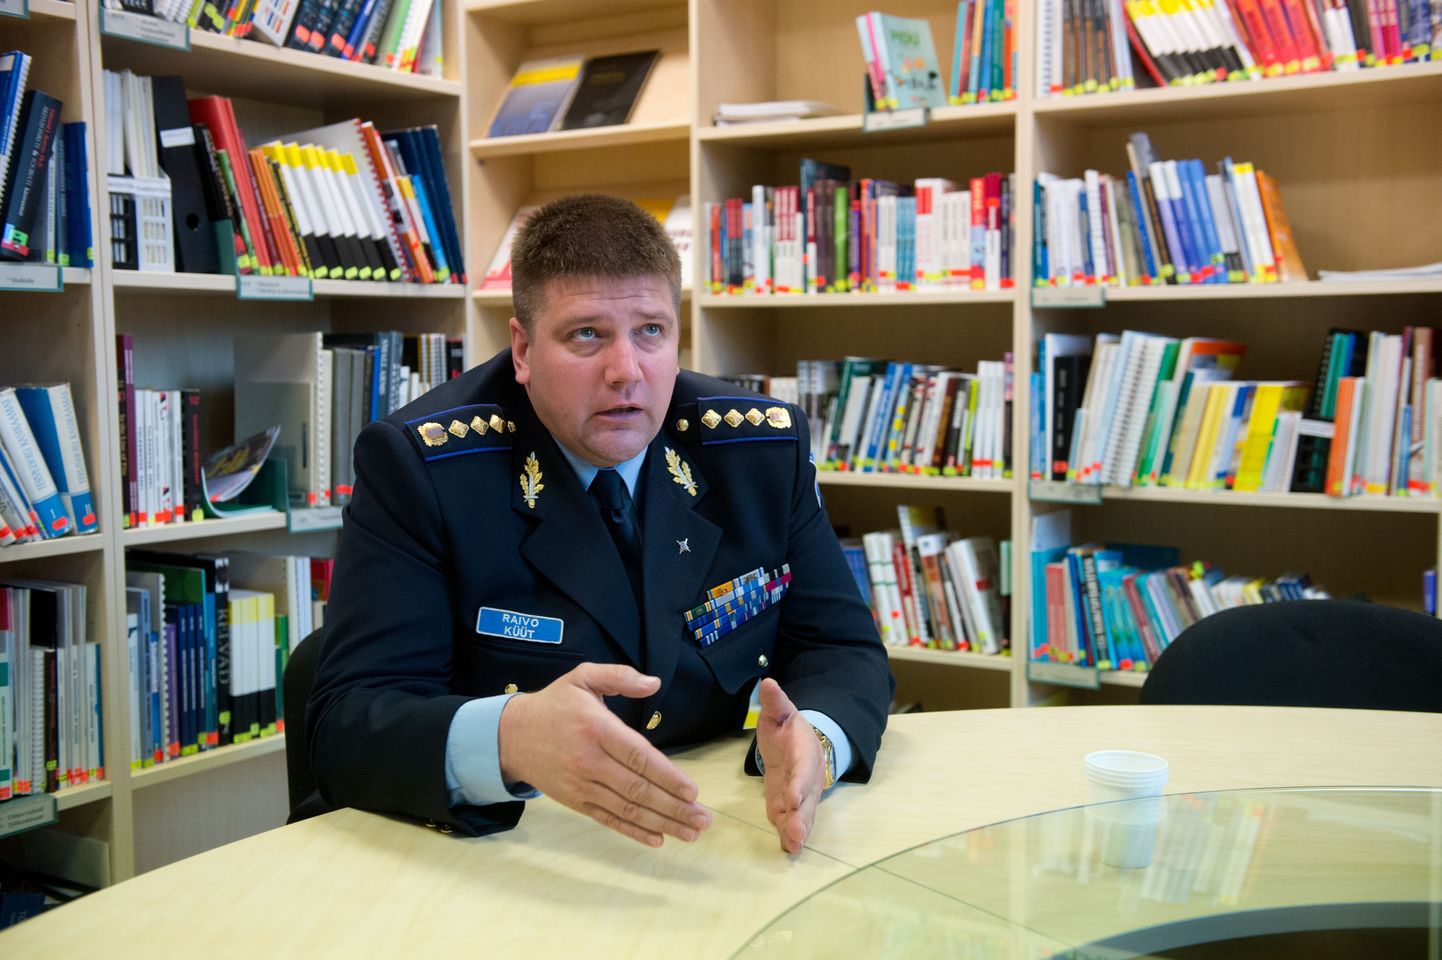 Politsei- ja piirivalveameti peadirektor Raivo Küüt